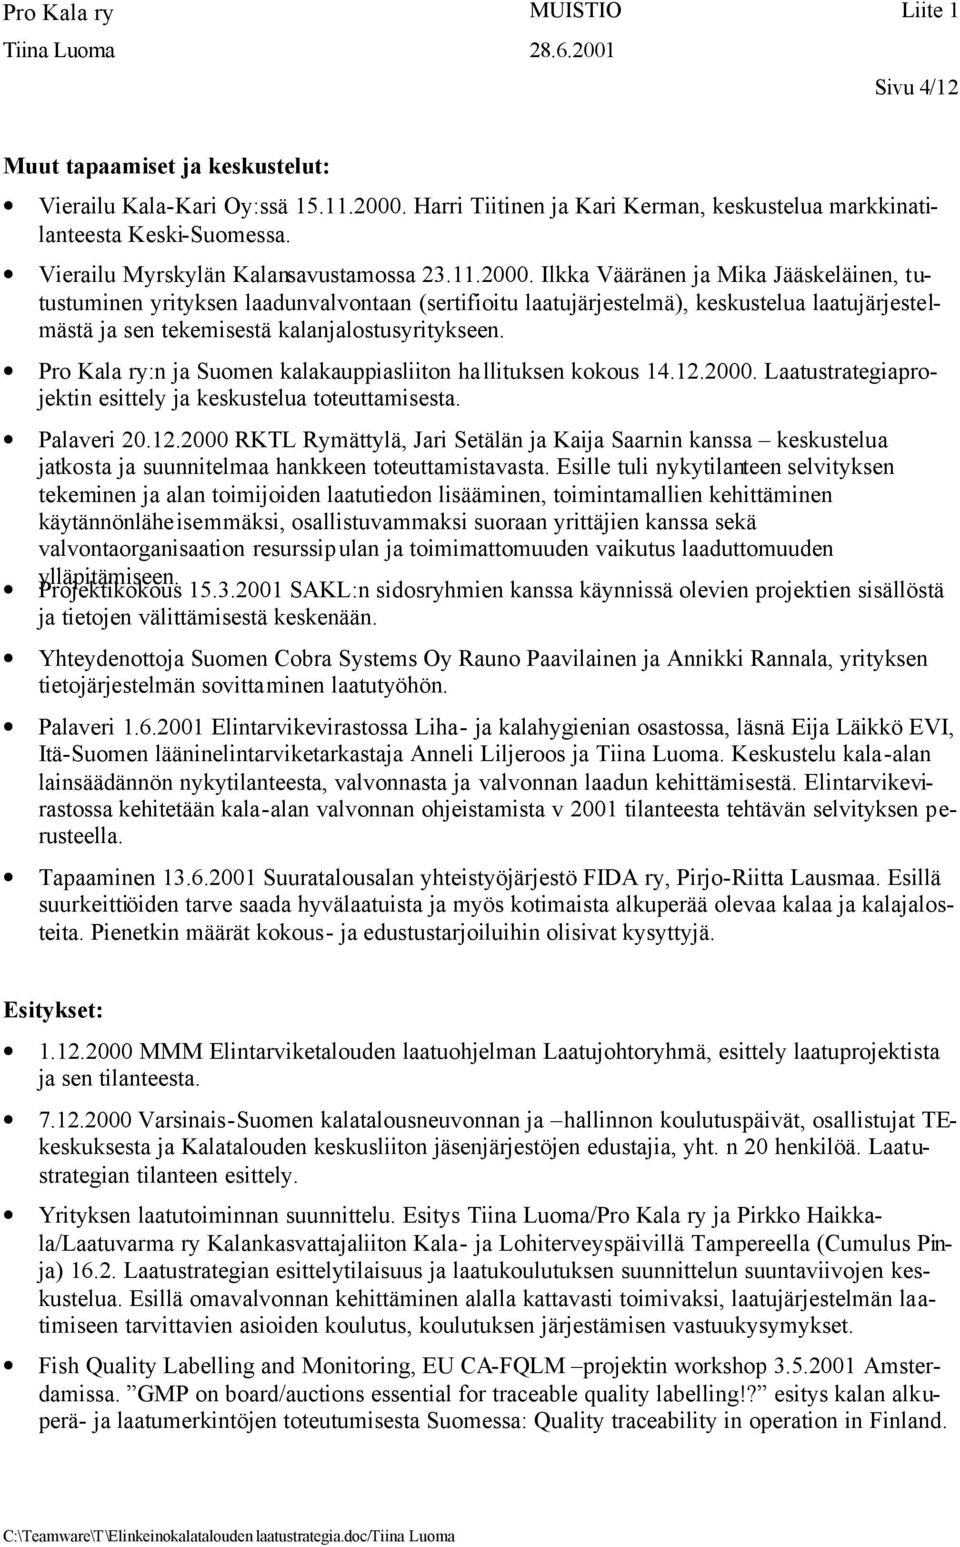 Pro Kala ry:n ja Suomen kalakauppiasliiton ha llituksen kokous 14.12.2000. Laatustrategiaprojektin esittely ja keskustelua toteuttamisesta. Palaveri 20.12.2000 RKTL Rymättylä, Jari Setälän ja Kaija Saarnin kanssa keskustelua jatkosta ja suunnitelmaa hankkeen toteuttamistavasta.